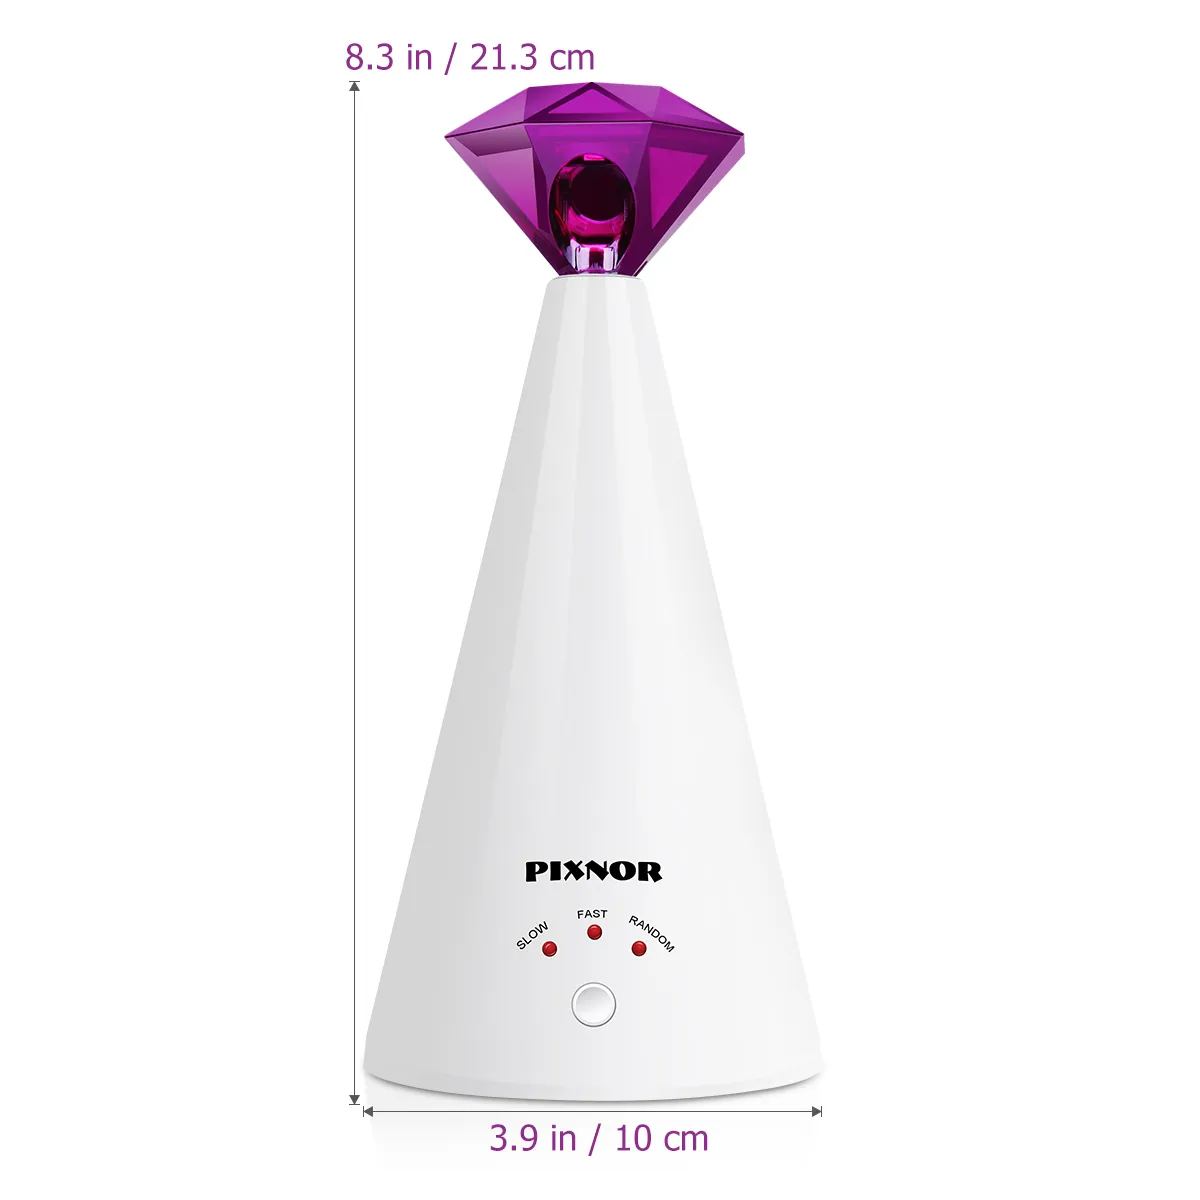 PIXNOR dispositif de taquinage Laser intelligent jouet électrique maison chat interactif réglable 3 vitesses pointeur pour animaux de compagnie violet 2011127597203